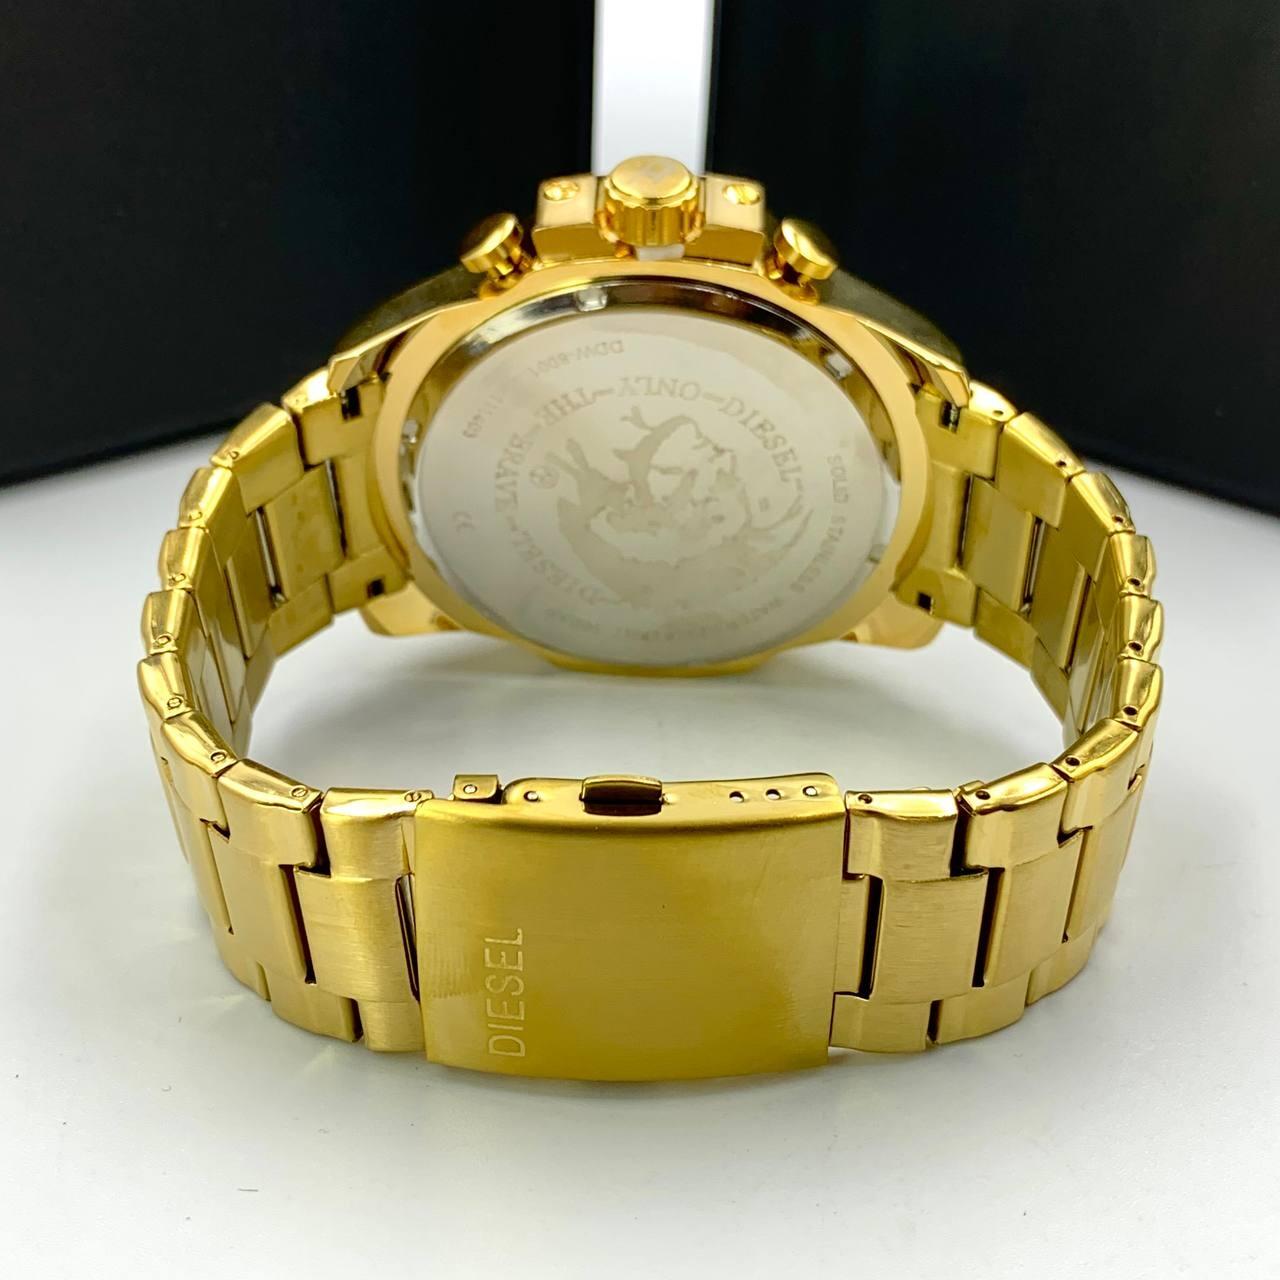 Relógio 10Bar Dourado/Preto 100% Funcional a prova dagua com caixa